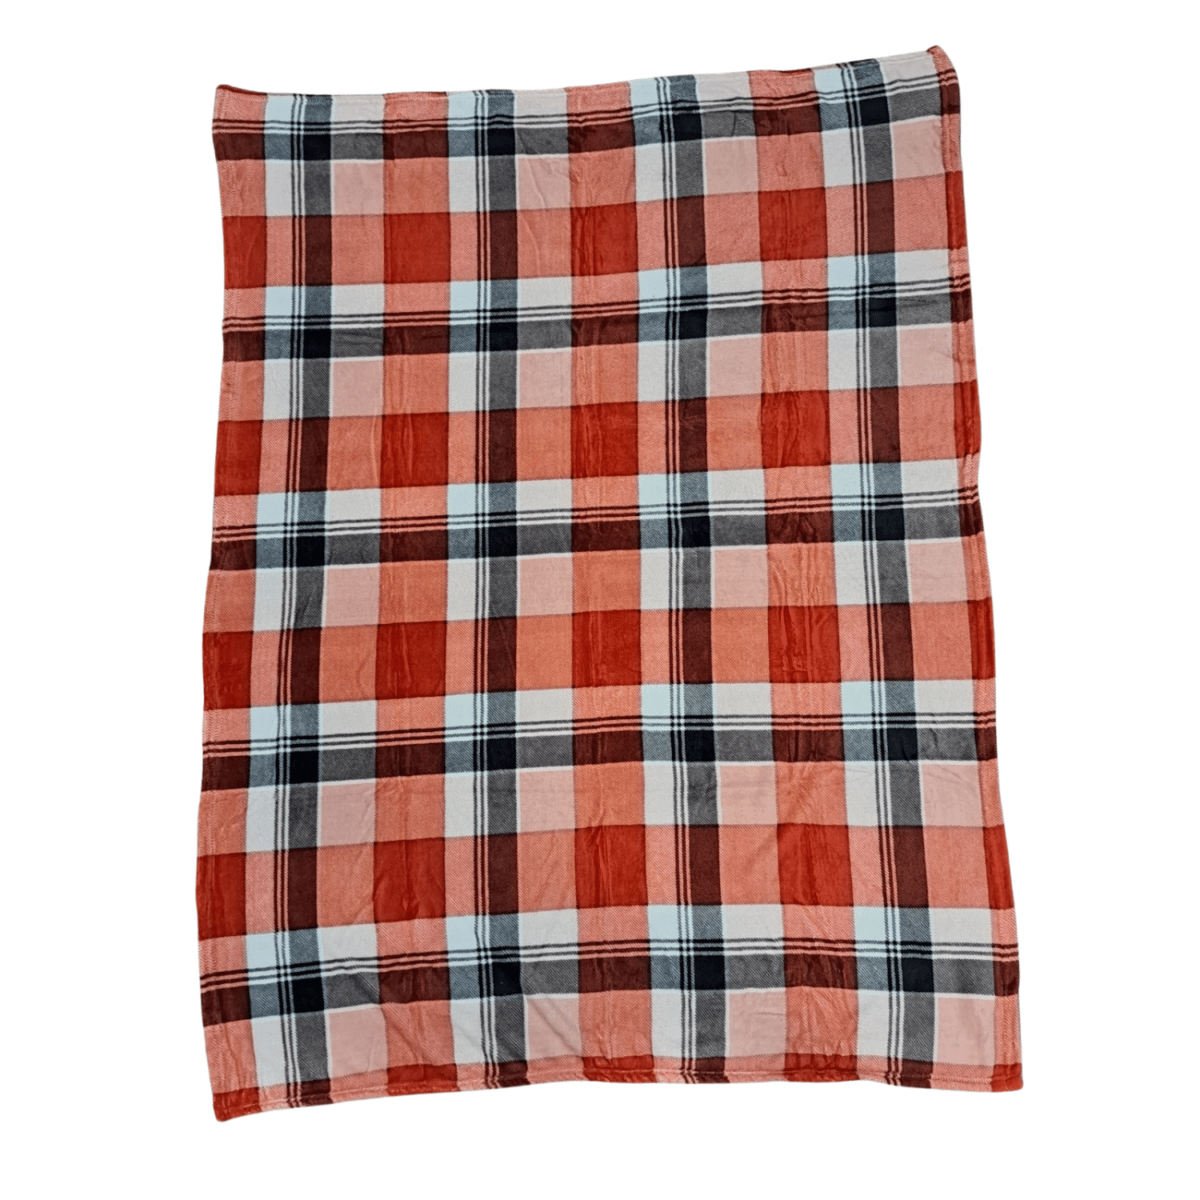 coperta-kros-rossa-scozzese-pile-calda-morbida-invernale-aperta